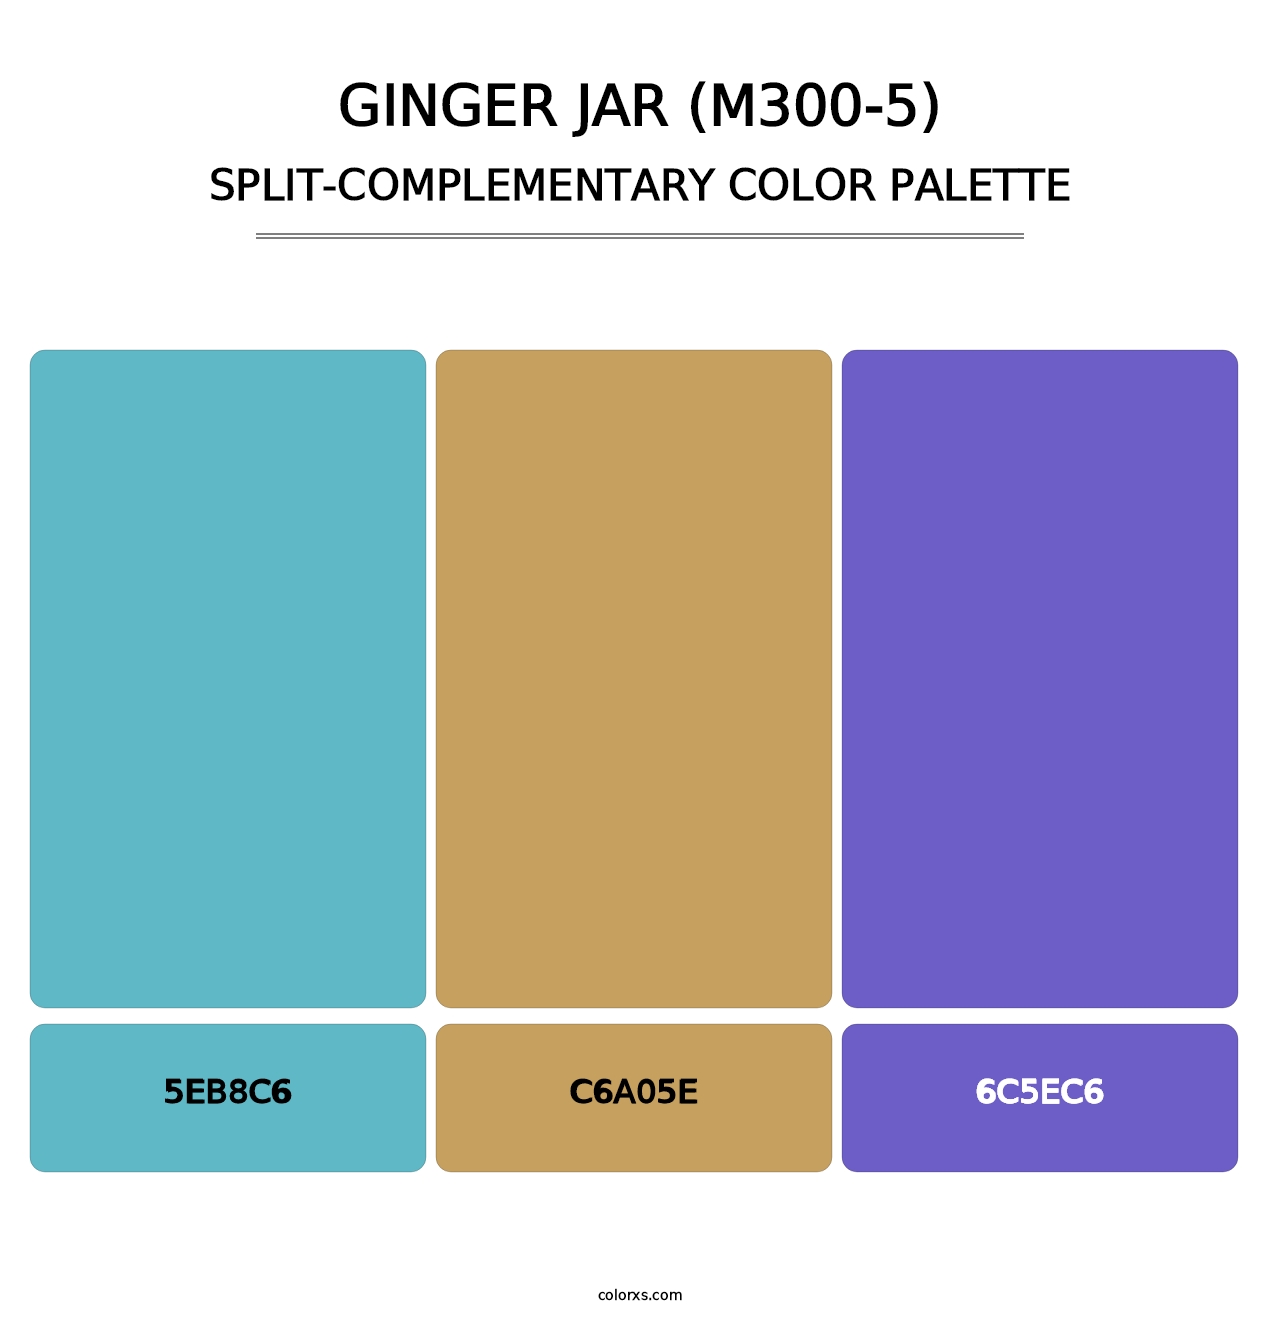 Ginger Jar (M300-5) - Split-Complementary Color Palette